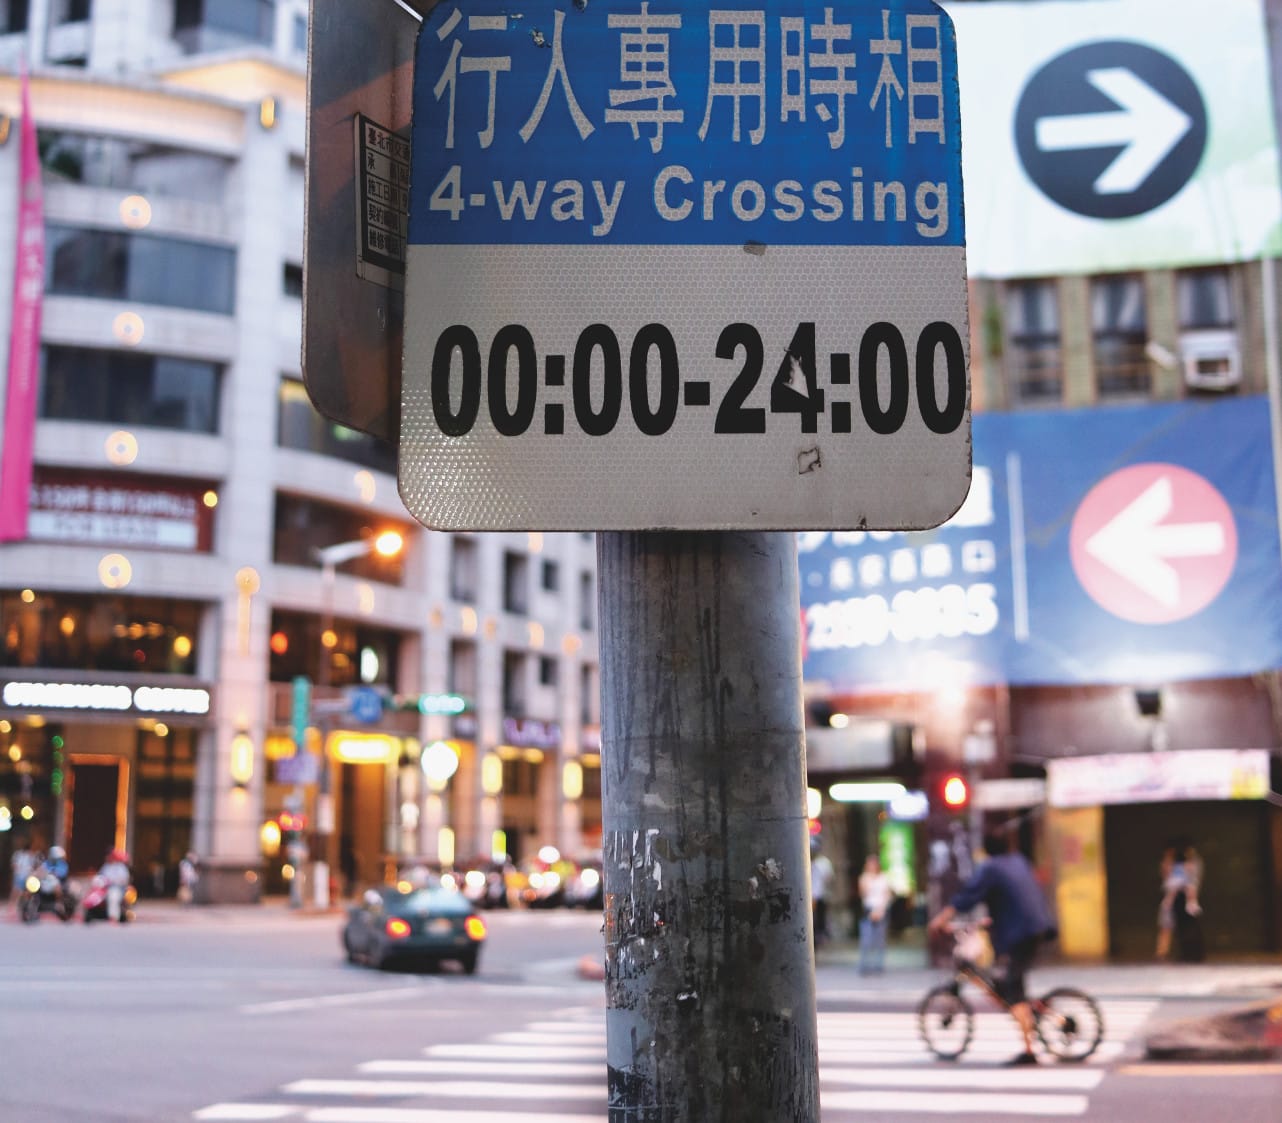 Erster Eindruck Taiwan: Kreuzung